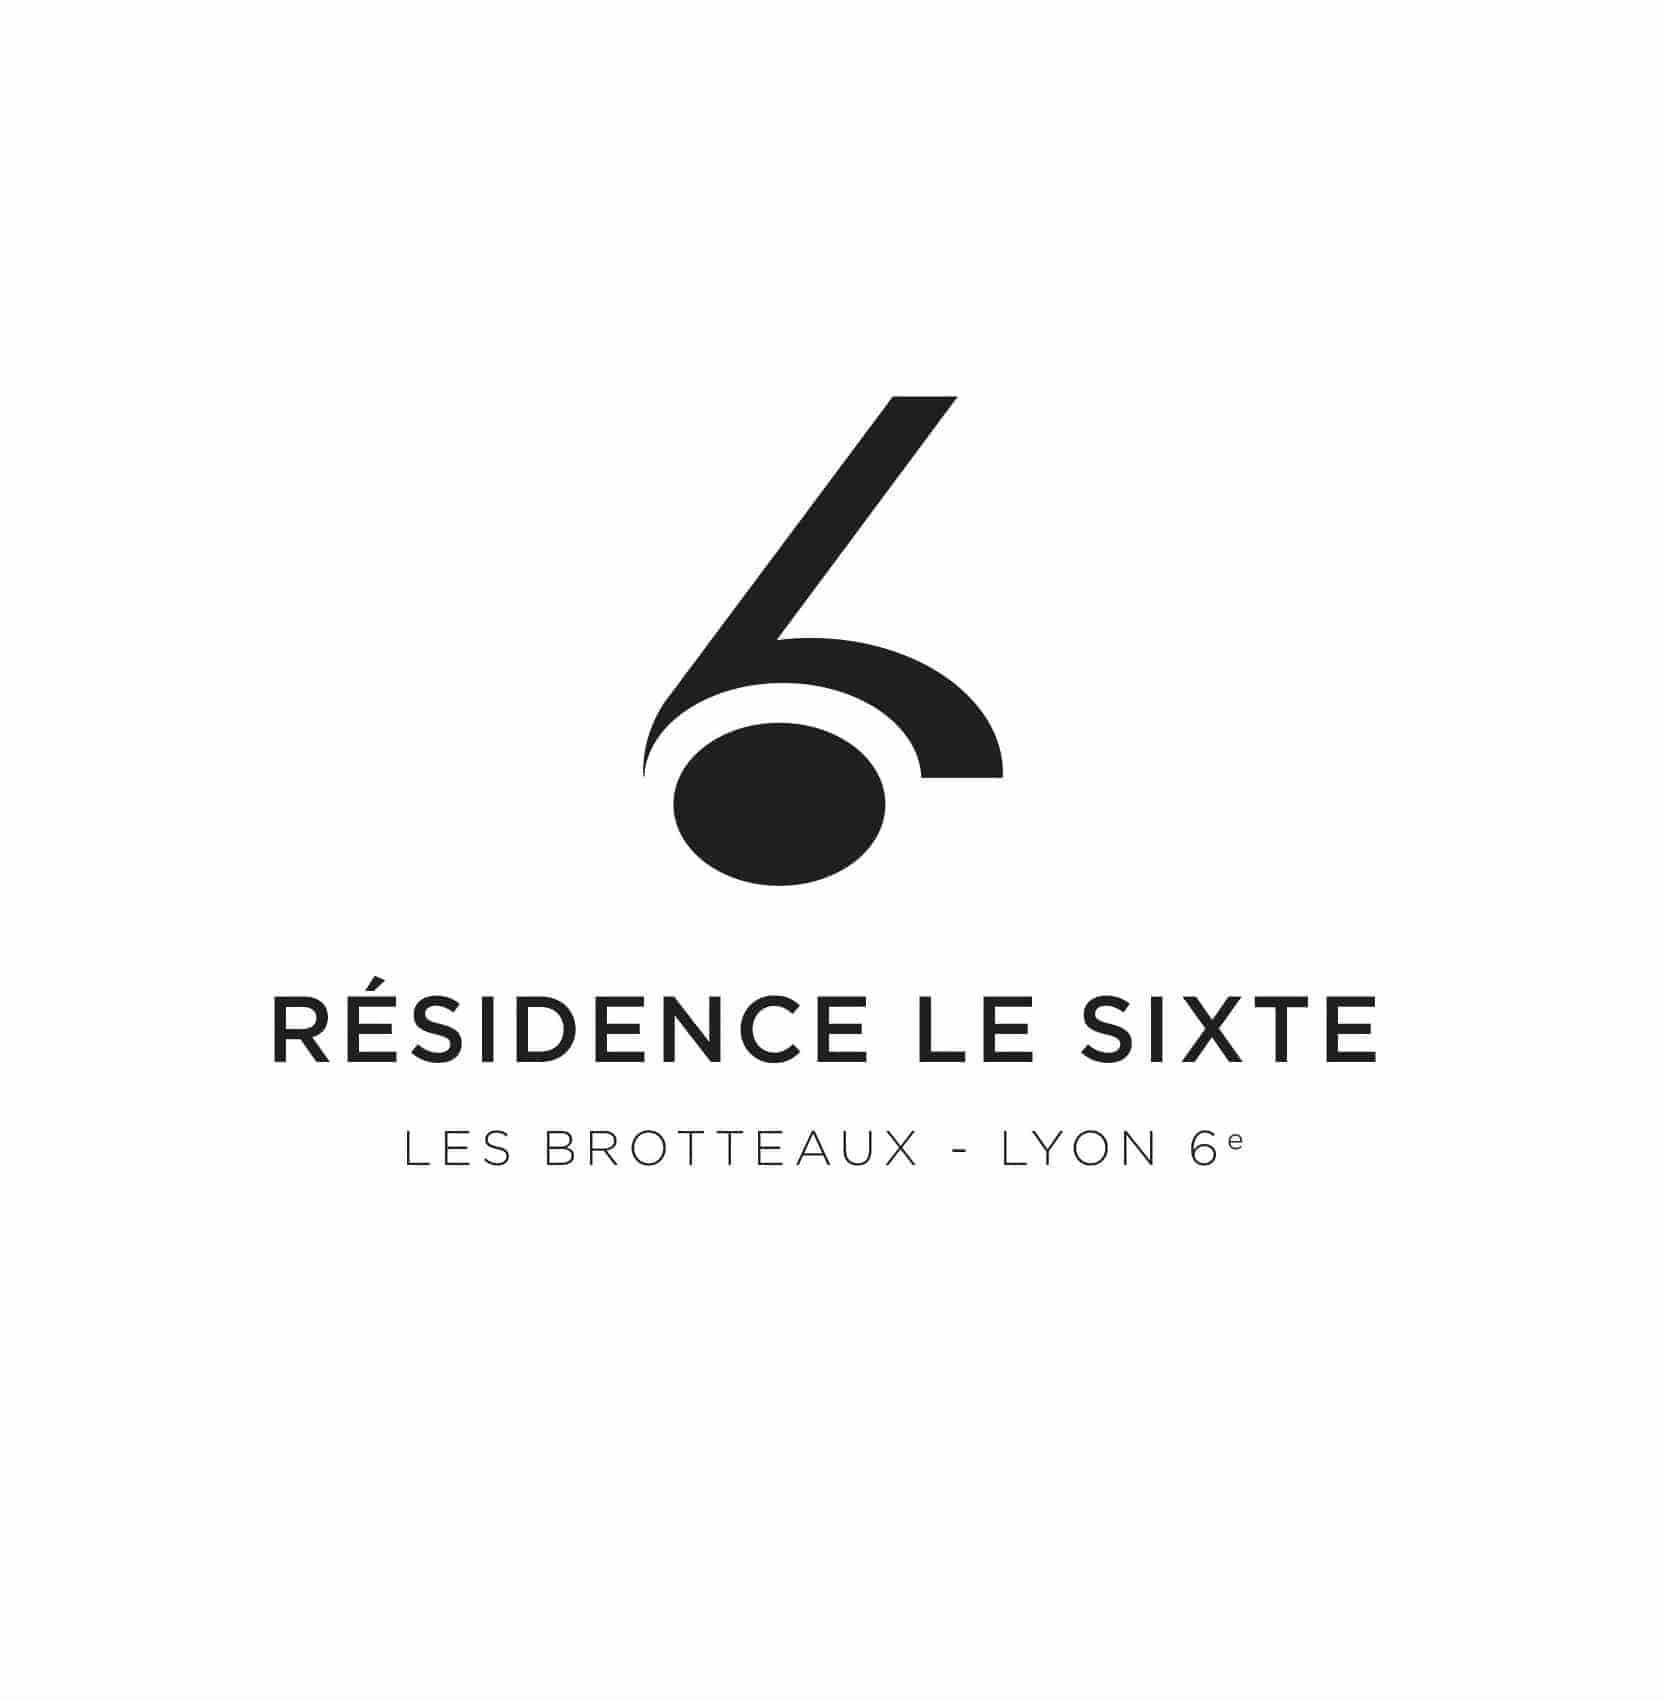 Programme immobilier Lyon 6ème Le Sixte